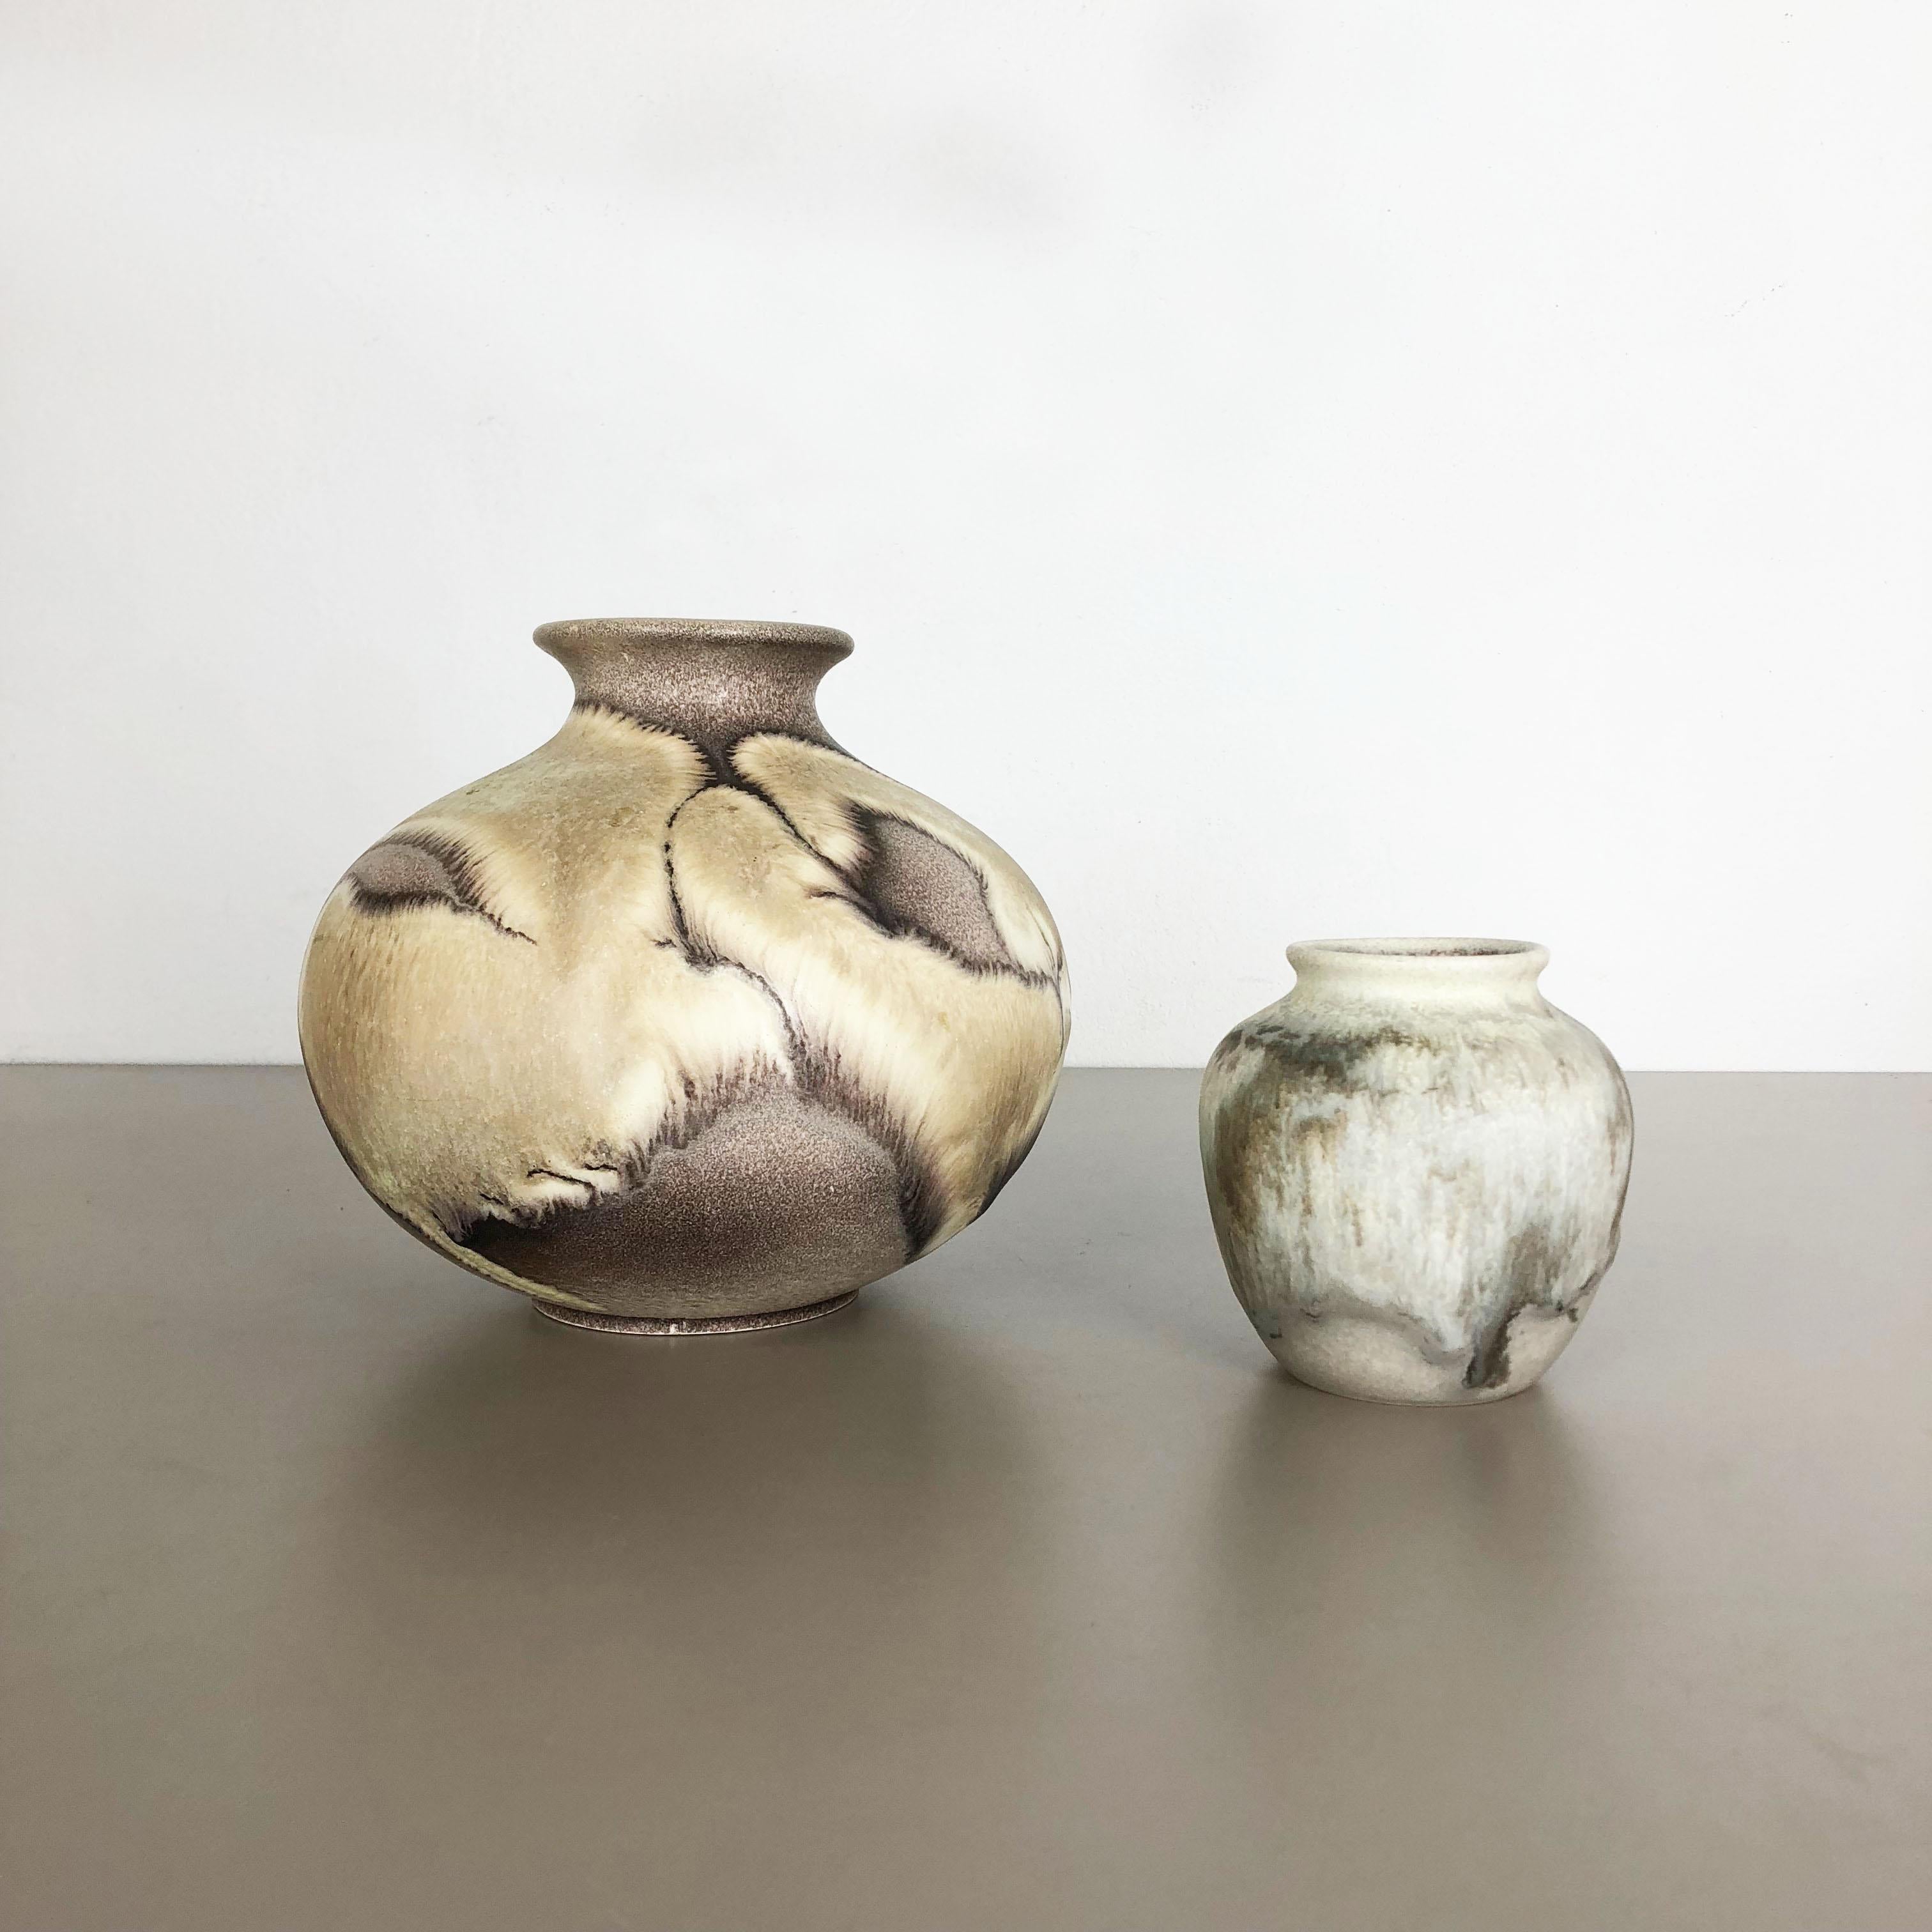 Artikel:

Satz mit 2 Vasen


Produzent:

Ruscha, Deutschland



Jahrzehnt:

1960s


Dieses originelle Vintage-Vasen-Set wurde in den 1960er Jahren von Ruscha in Deutschland entworfen und hergestellt. Dieses Angebot enthält ein Set